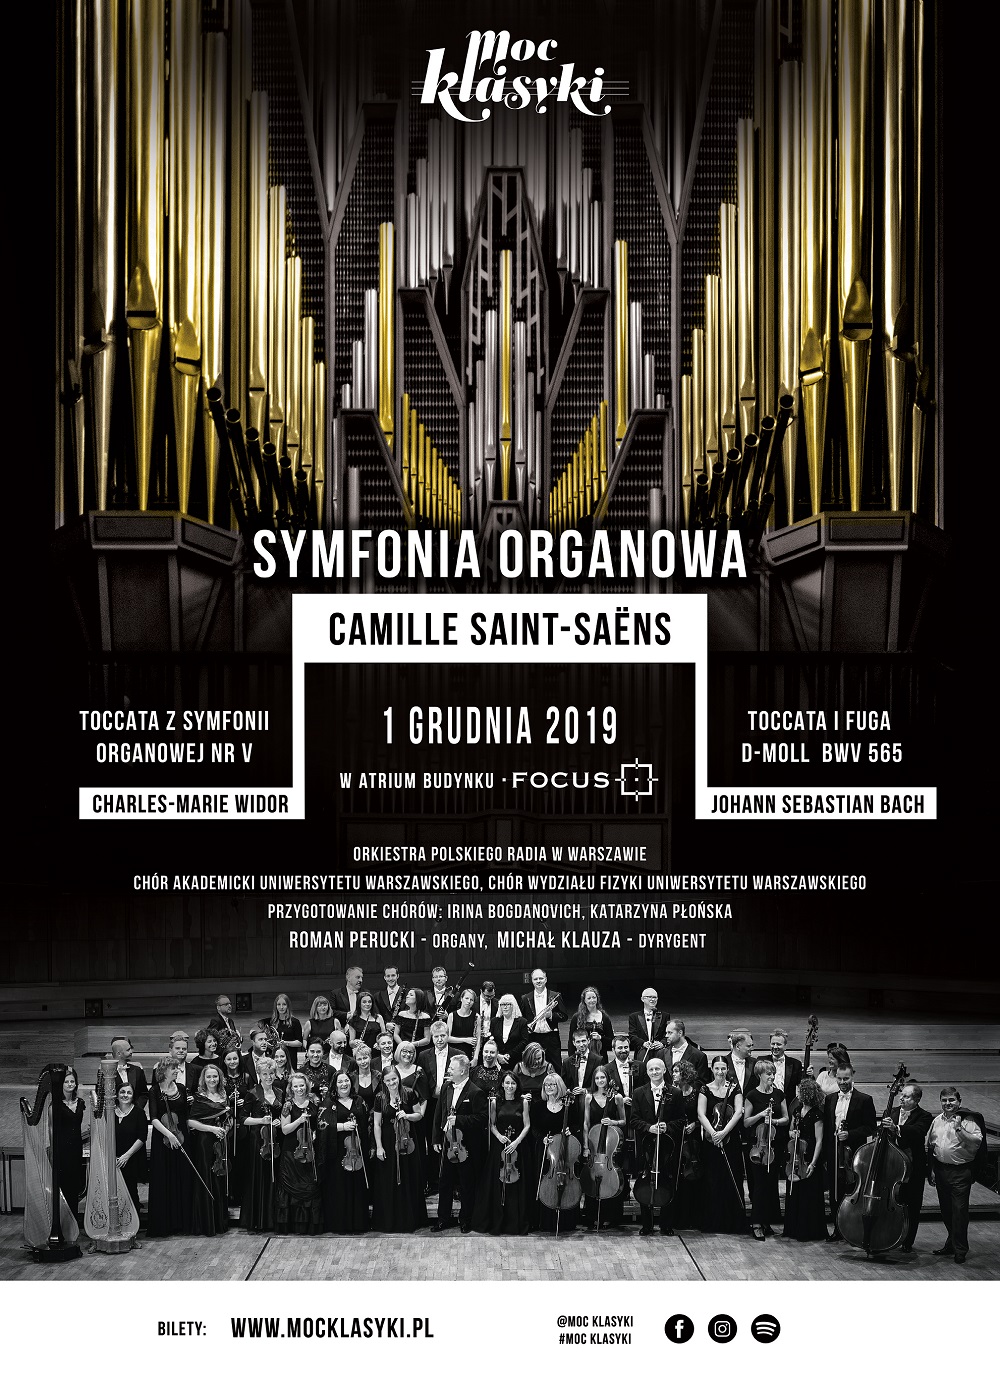 Organ Symphony - Focus building in Warsaw